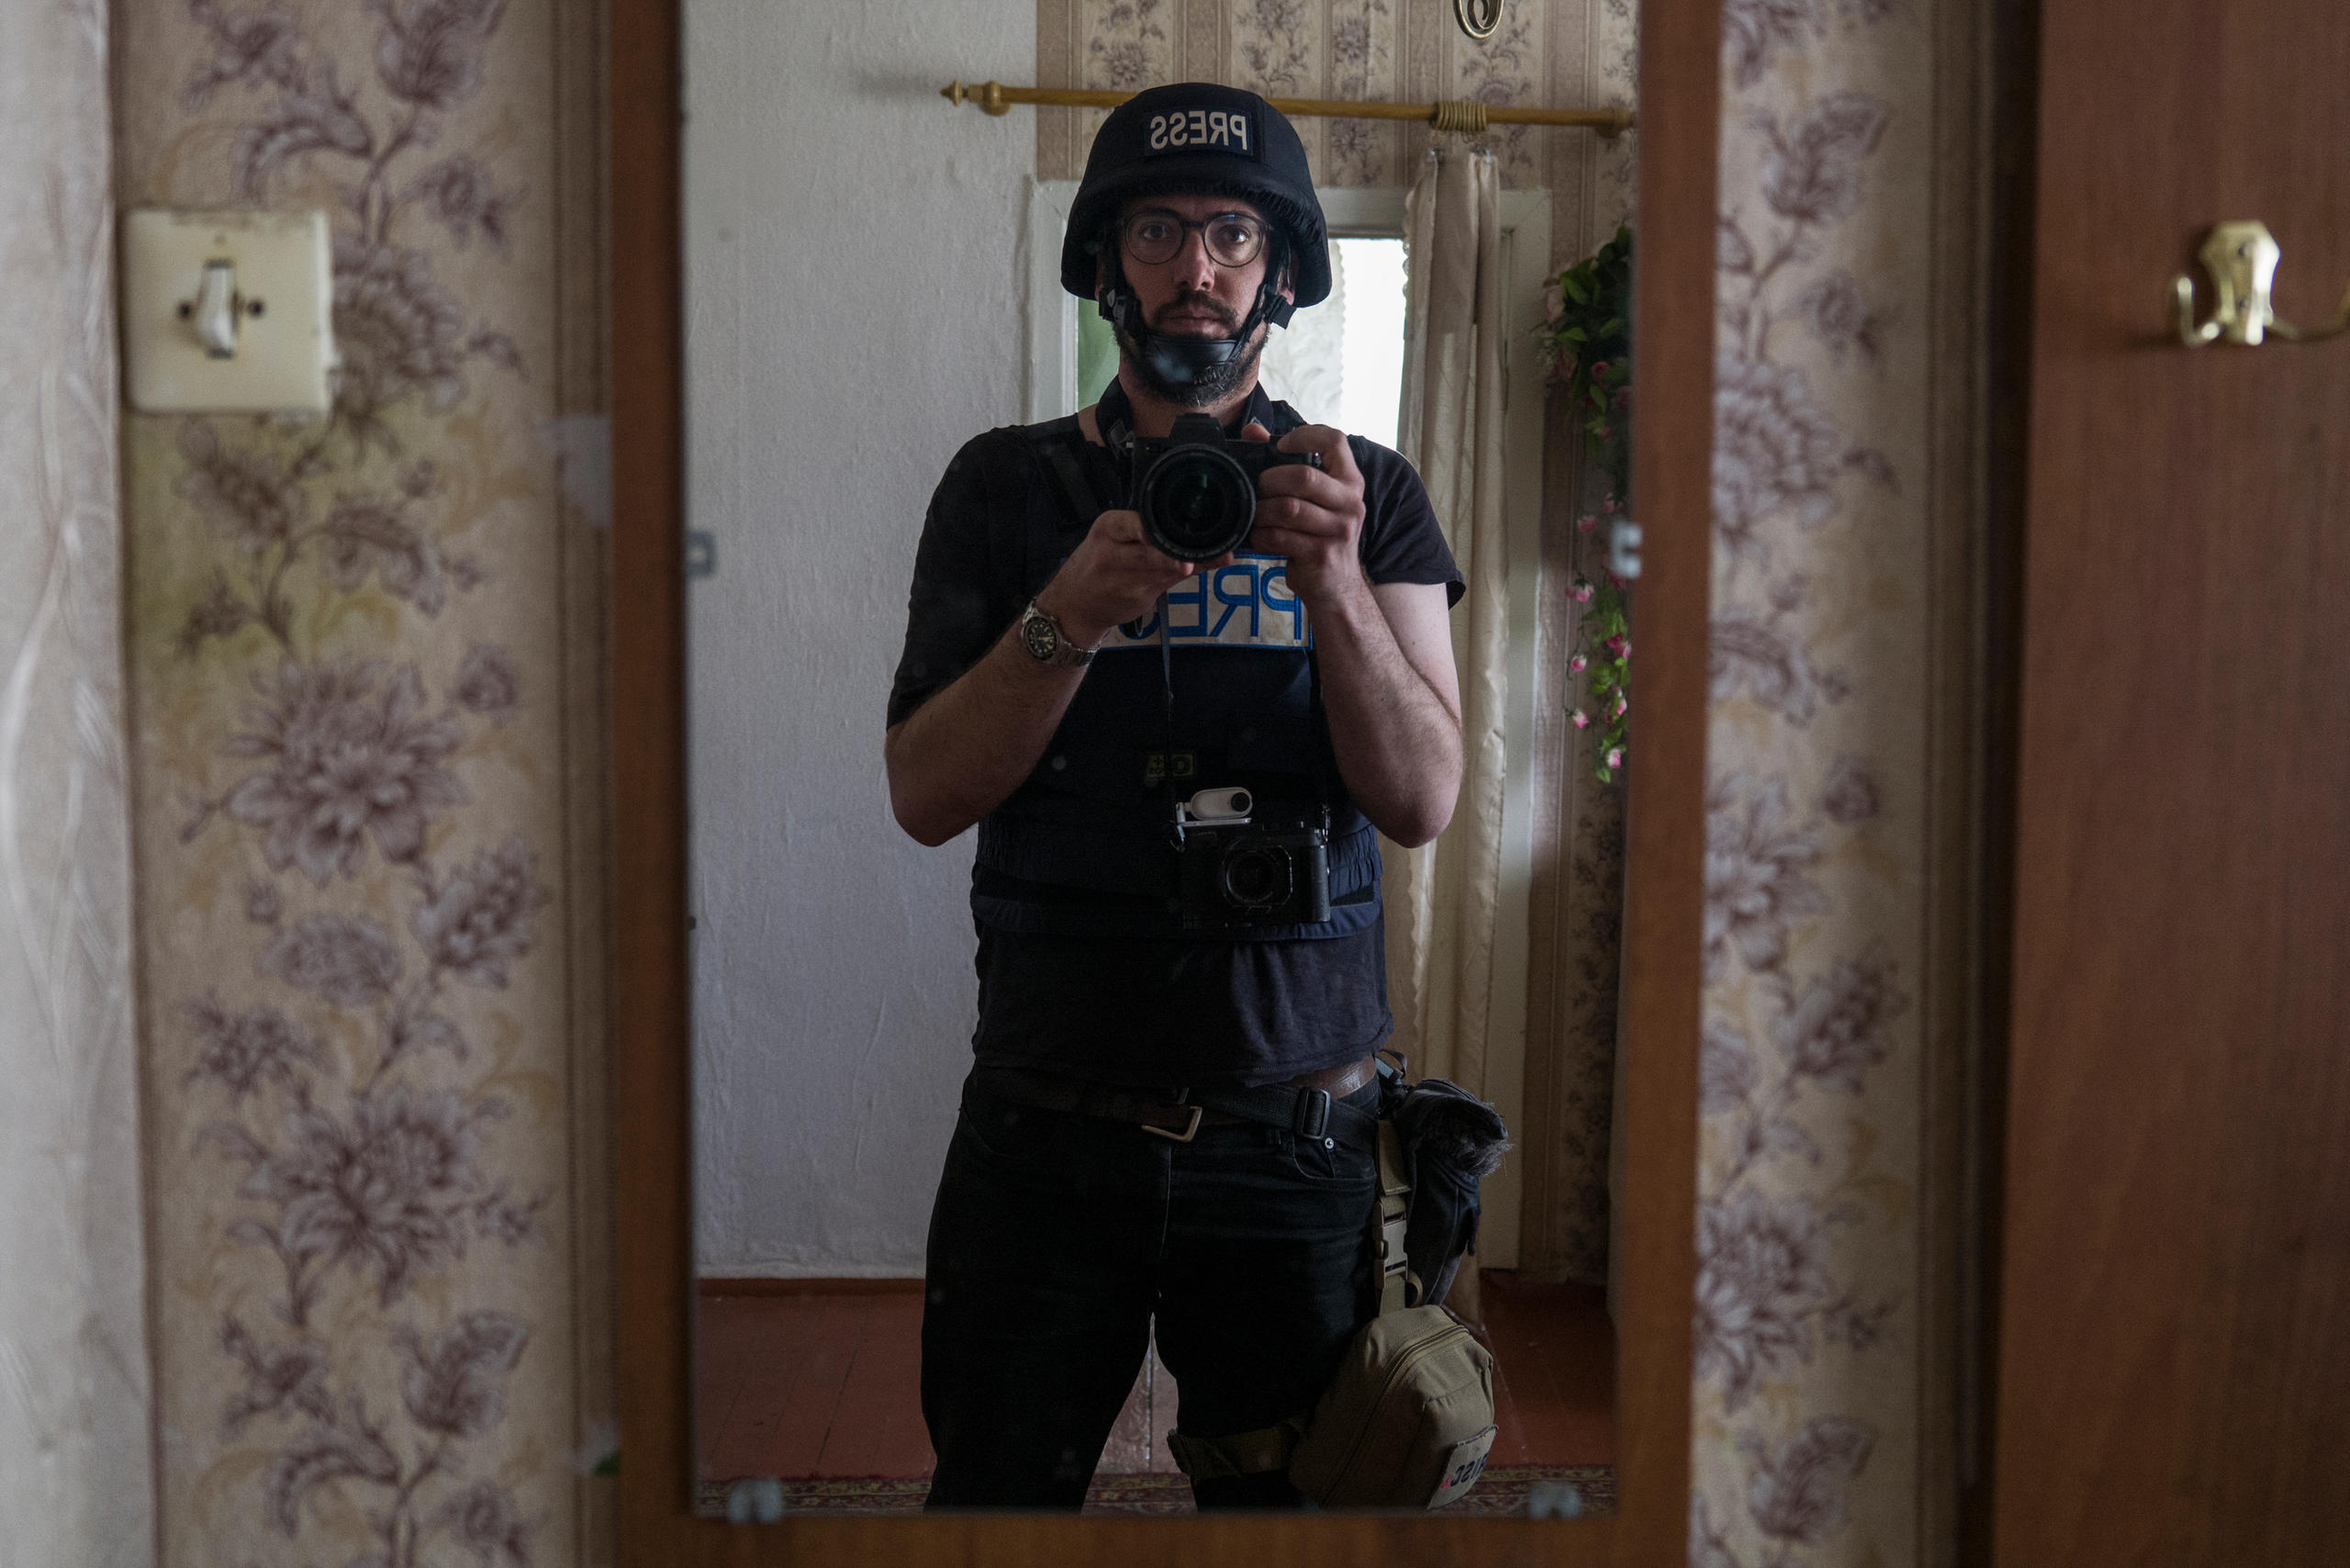 Fotógrafo haciéndose una foto en el reflejo de un espejo